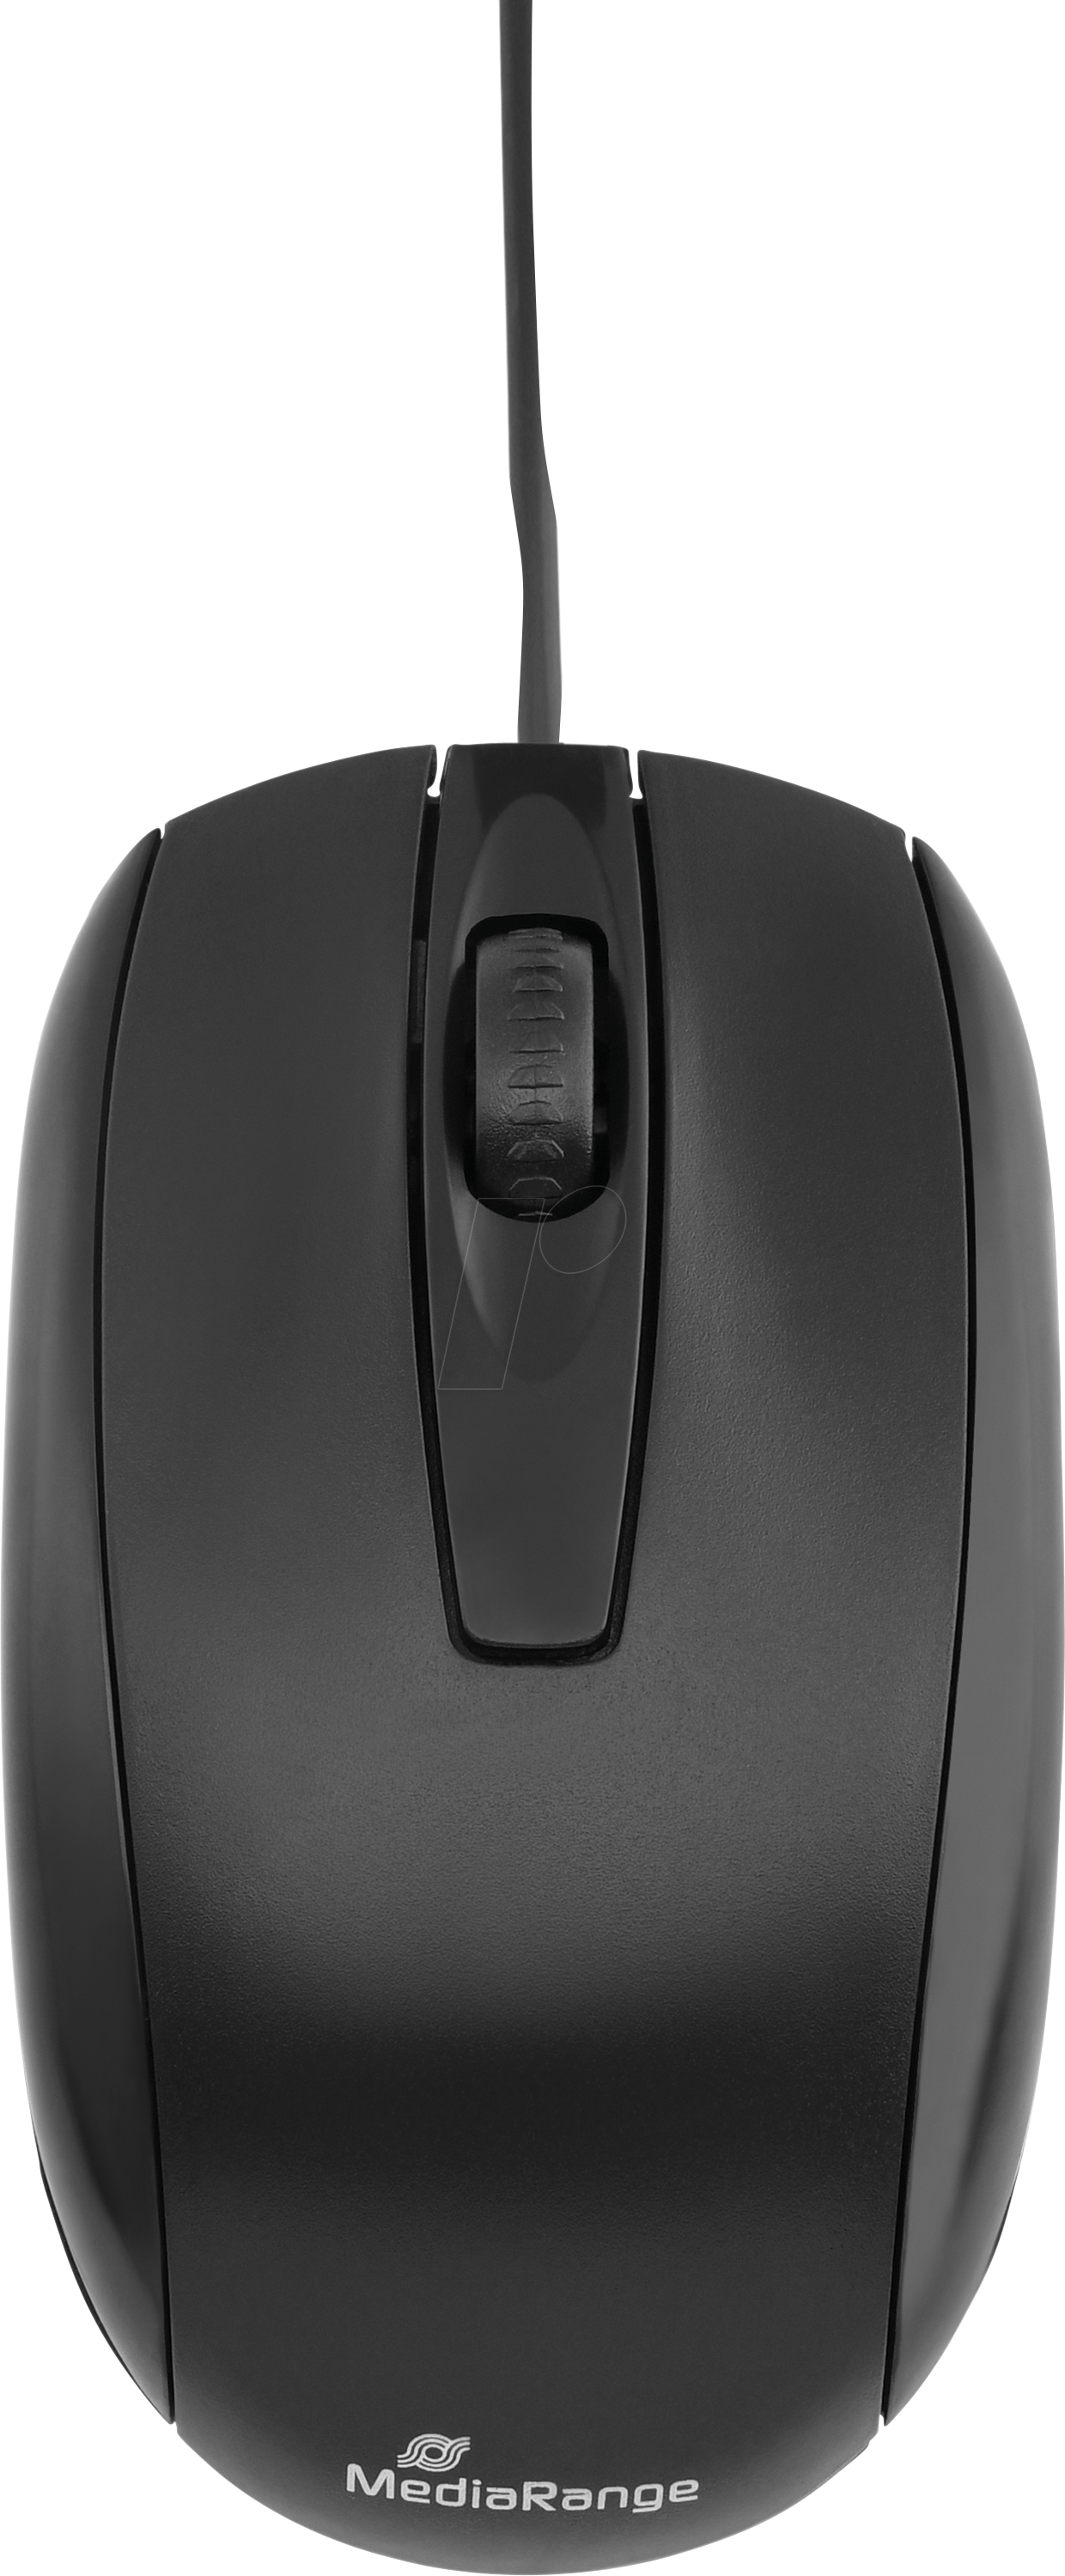 MR OS211 - Maus (Mouse), Kabel, USB, schwarz